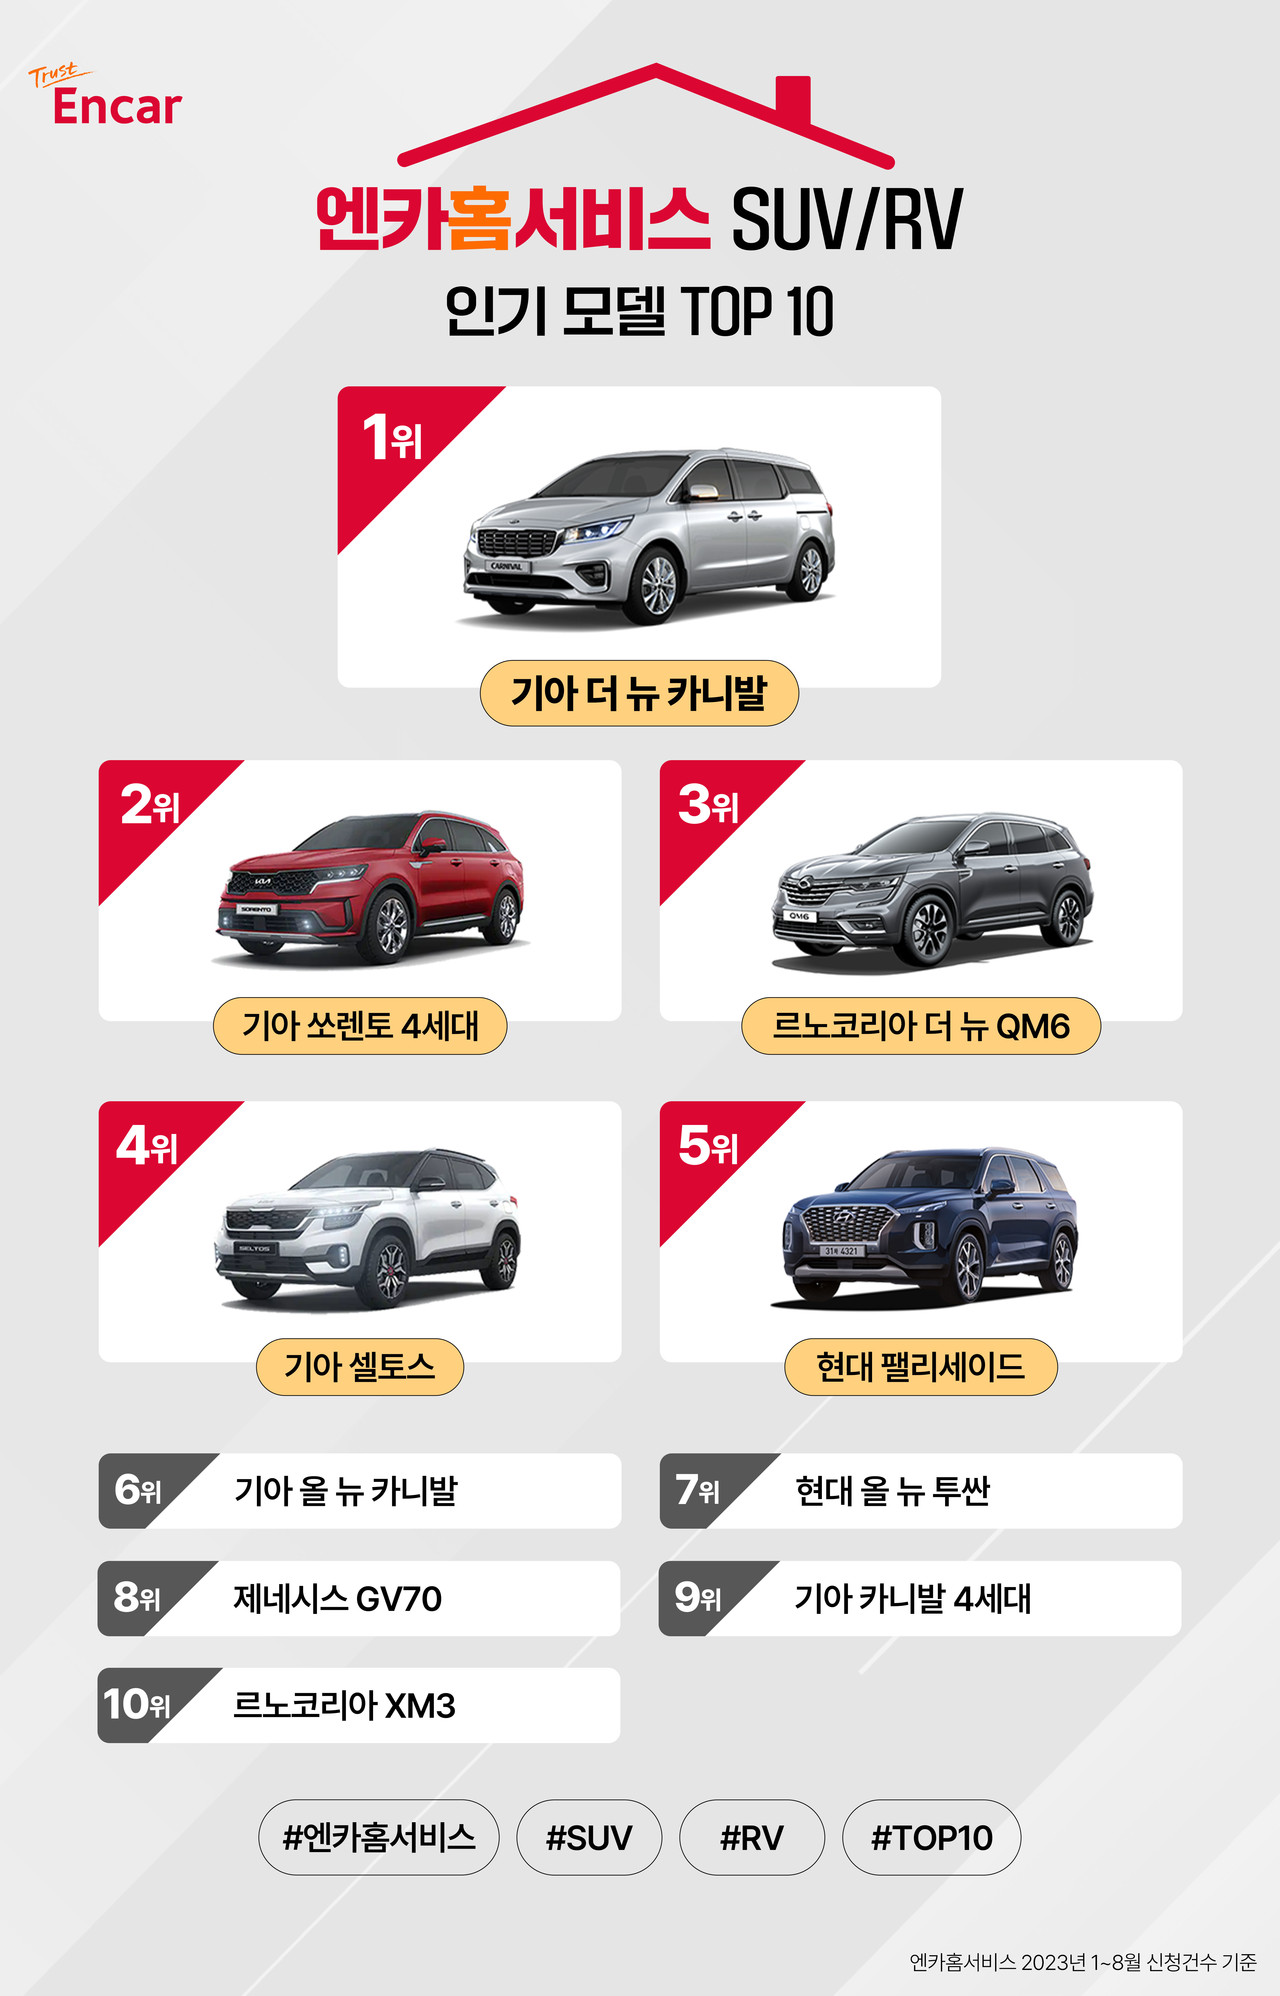 ▲ 23년 1~8월 엔카홈서비스 인기 SUV/RV 모델 TOP 10